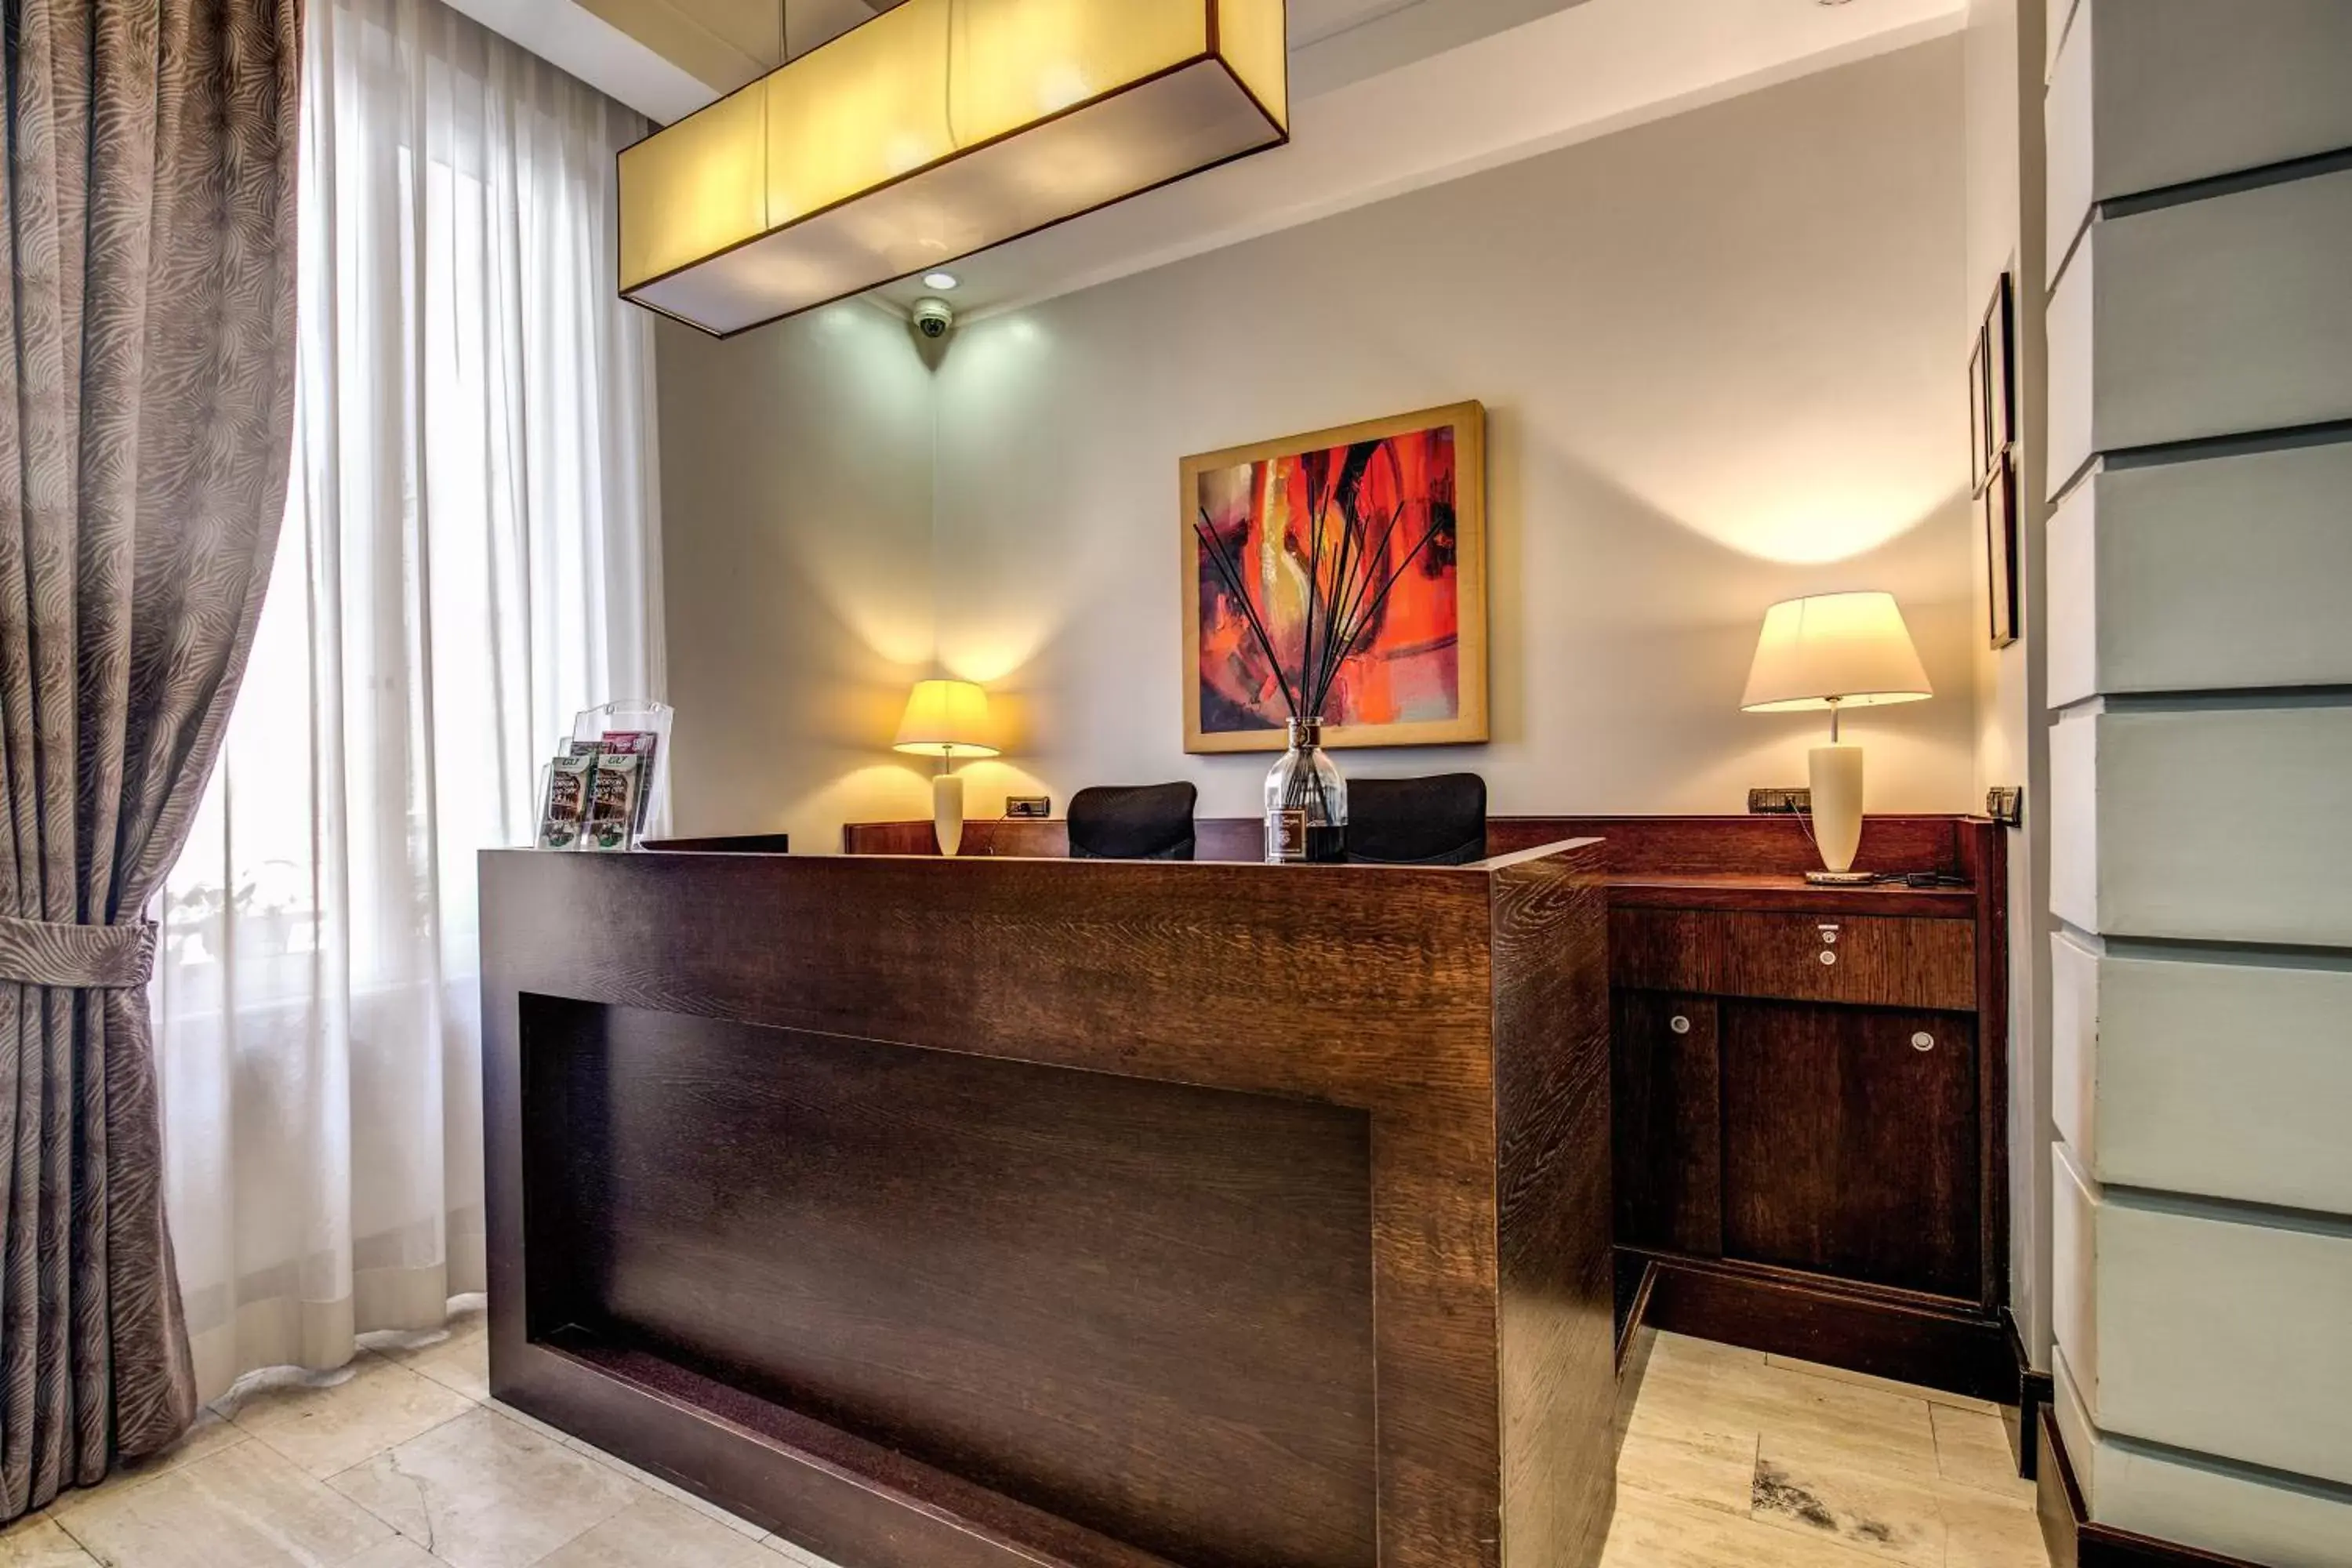 Lobby or reception, Lobby/Reception in Hotel Giuggioli